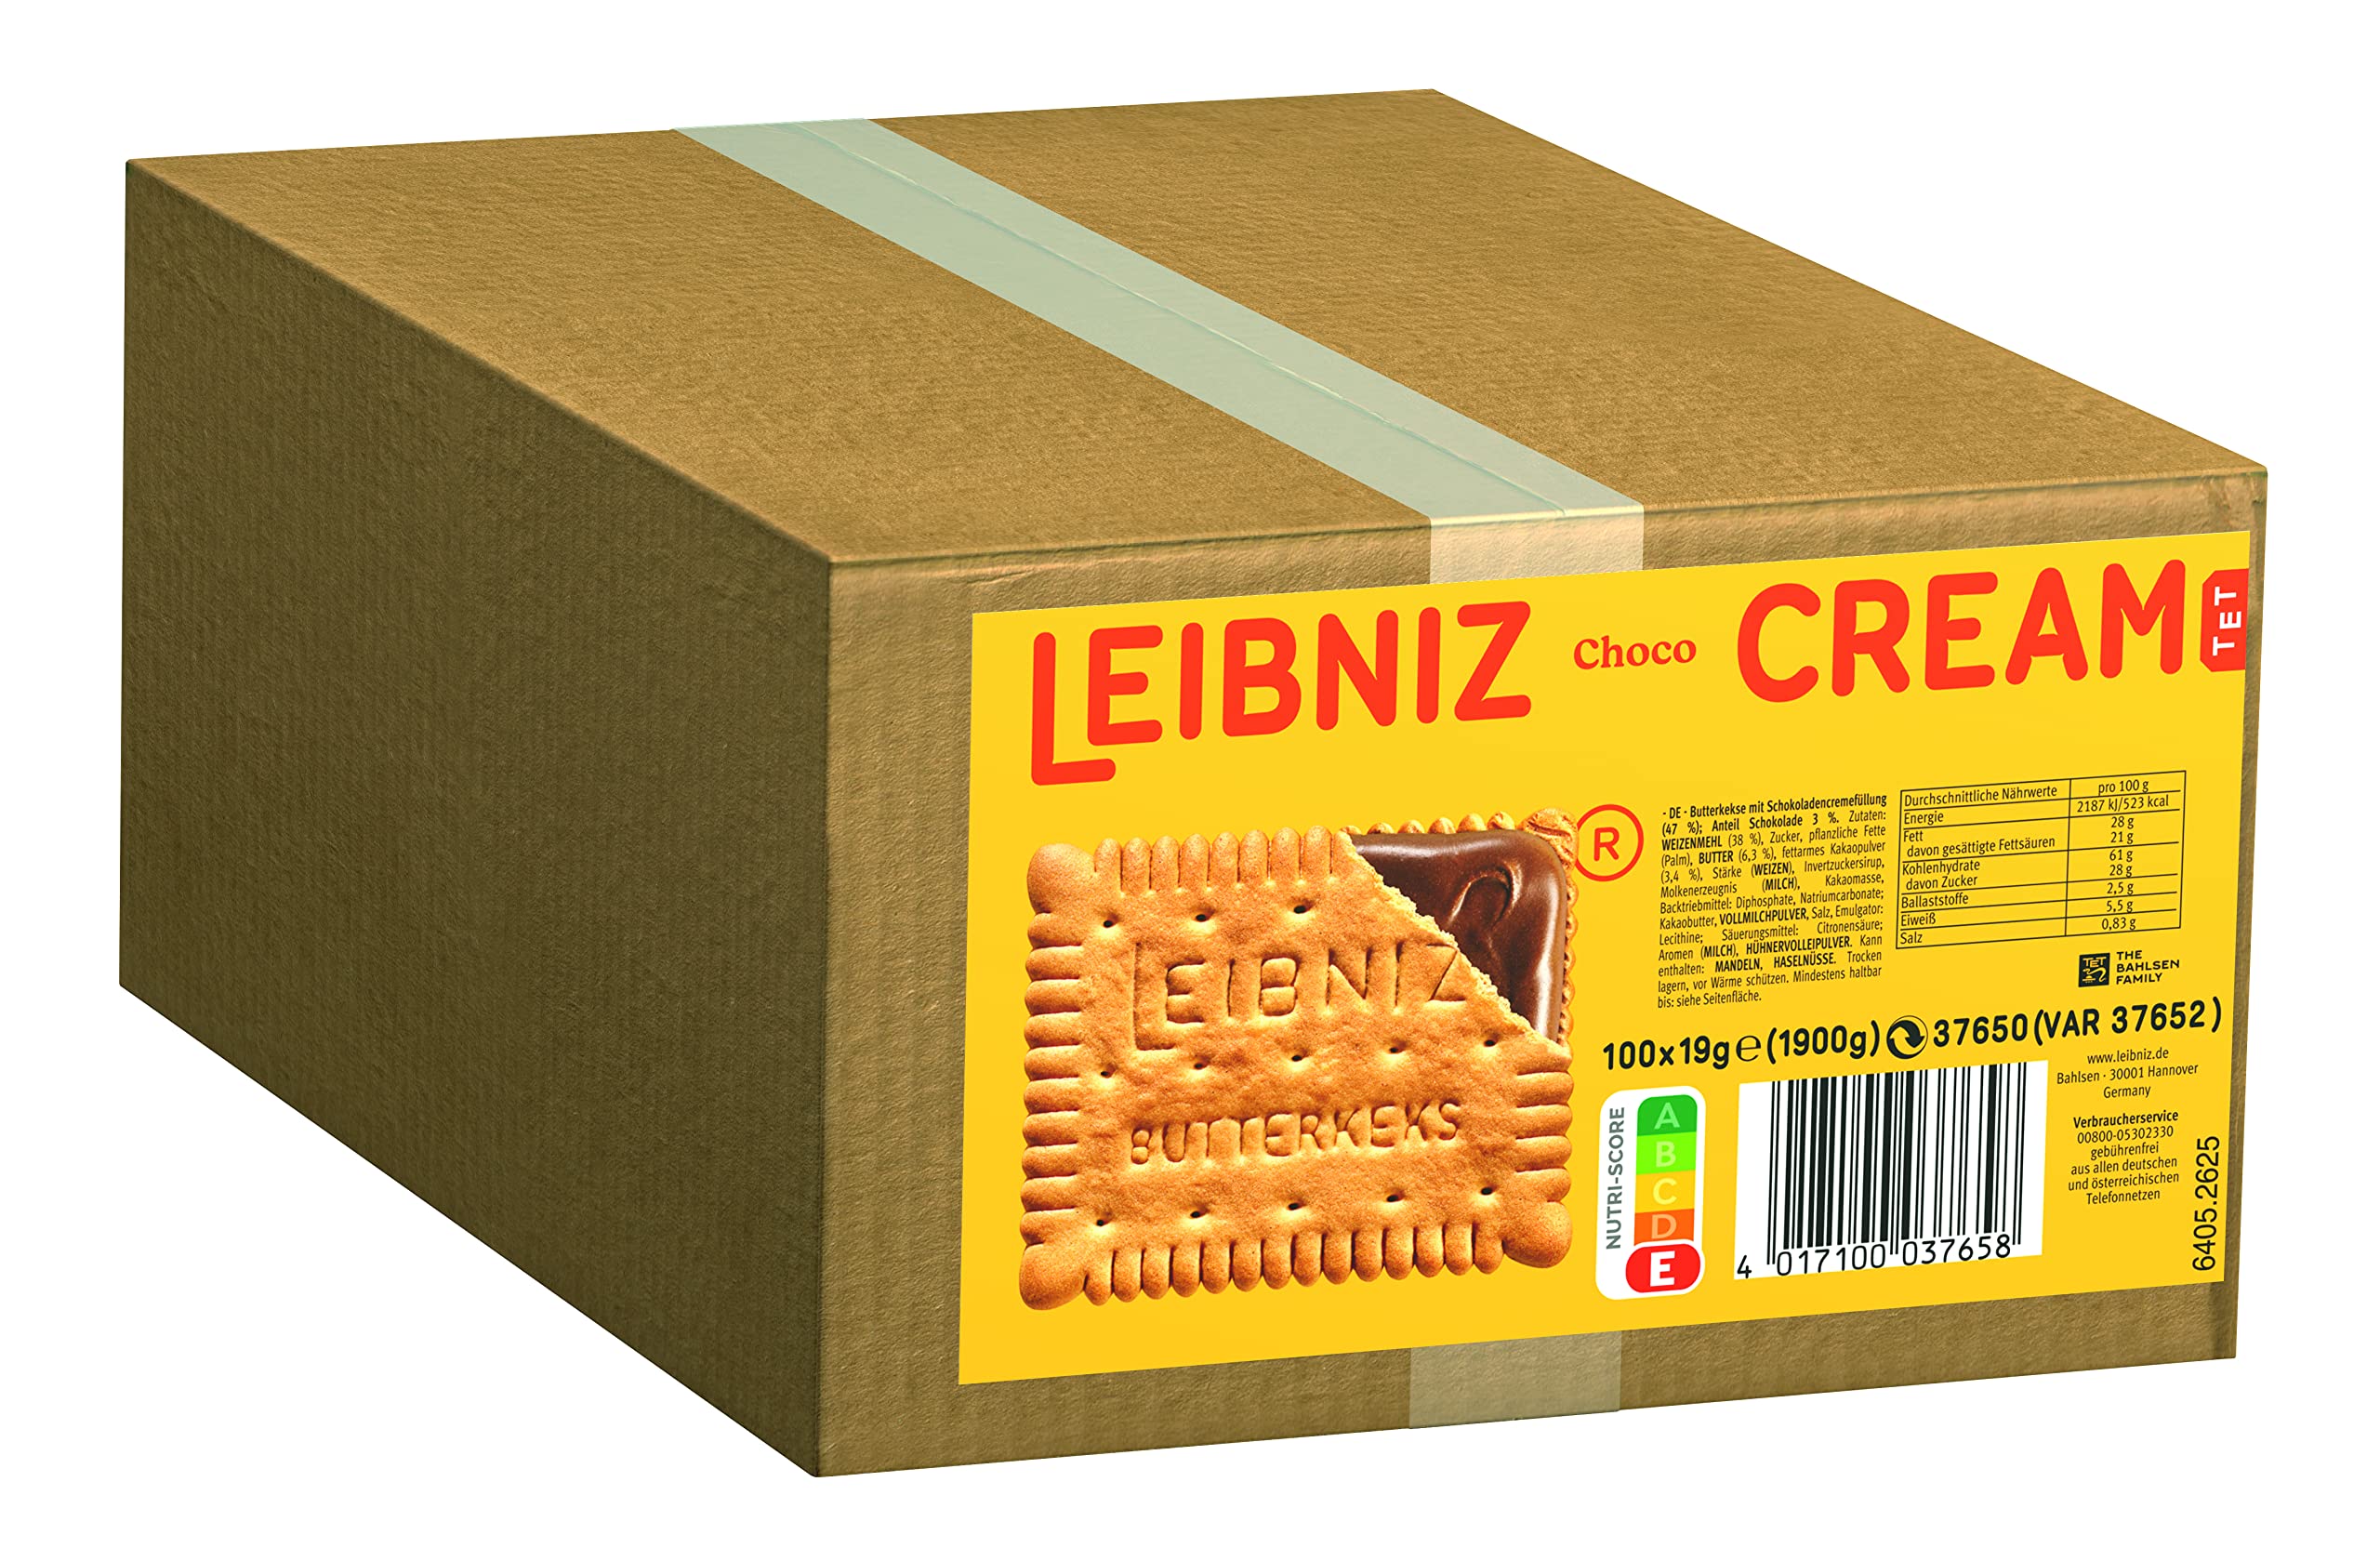 LEIBNIZ Cream Choco - Großpackung - 2 Butterkekse mit Schoko-Cremefüllung (100 x 19g)